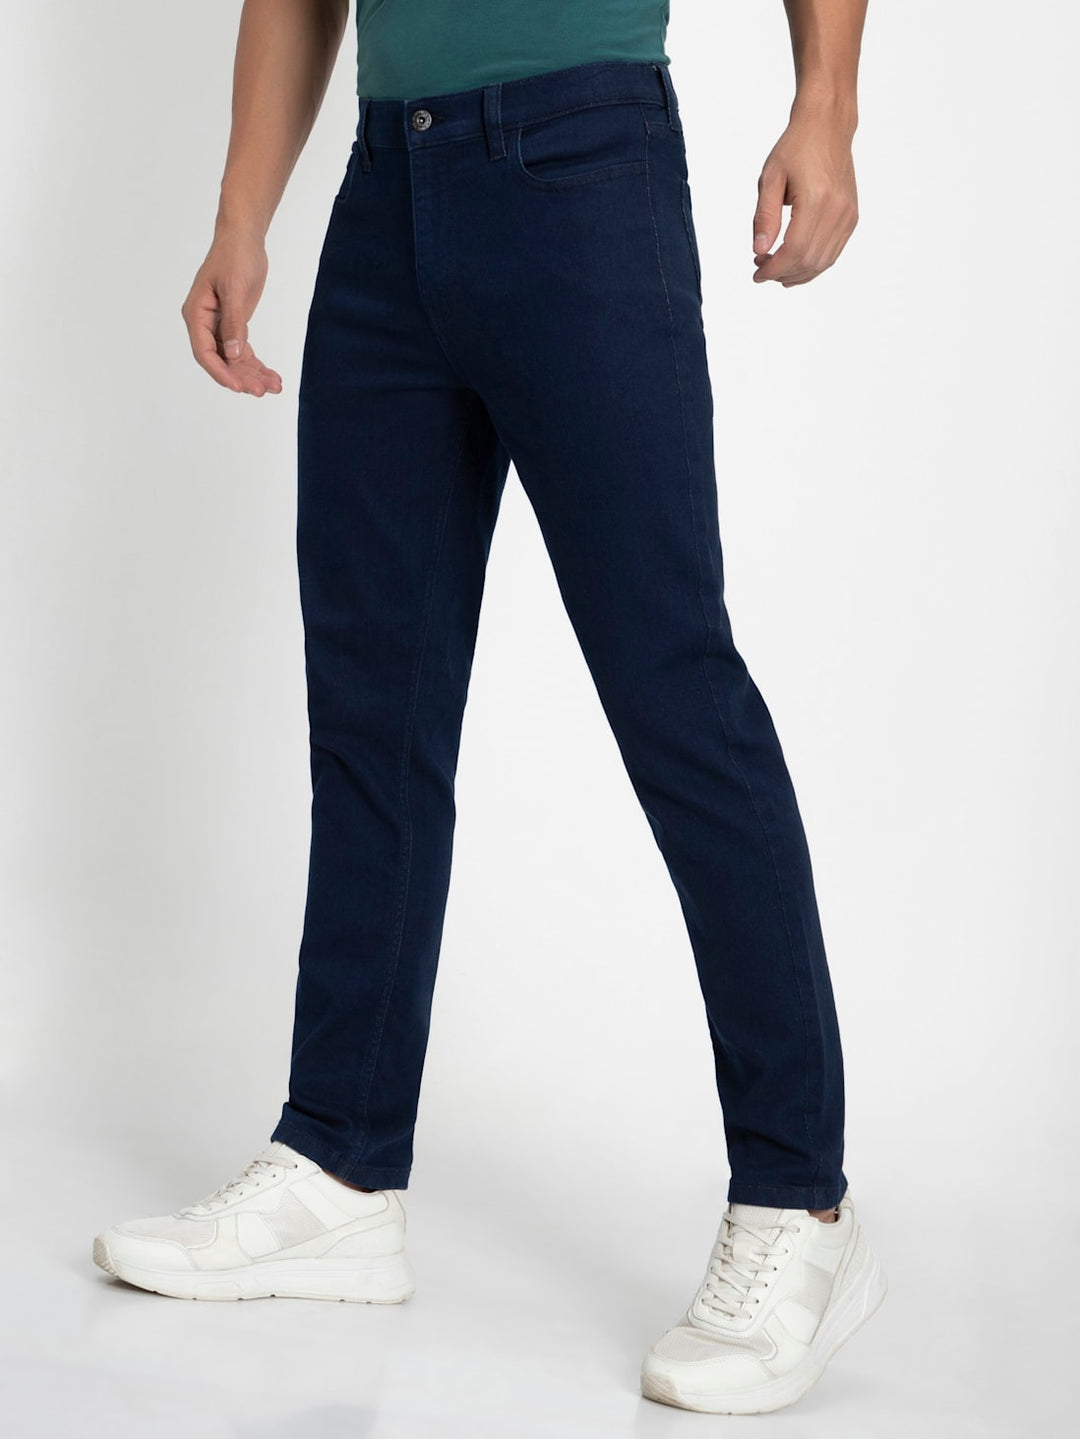 Shop JOCKEY Men's Super Combed Cotton Rich Slim Fit Leisure Jeans